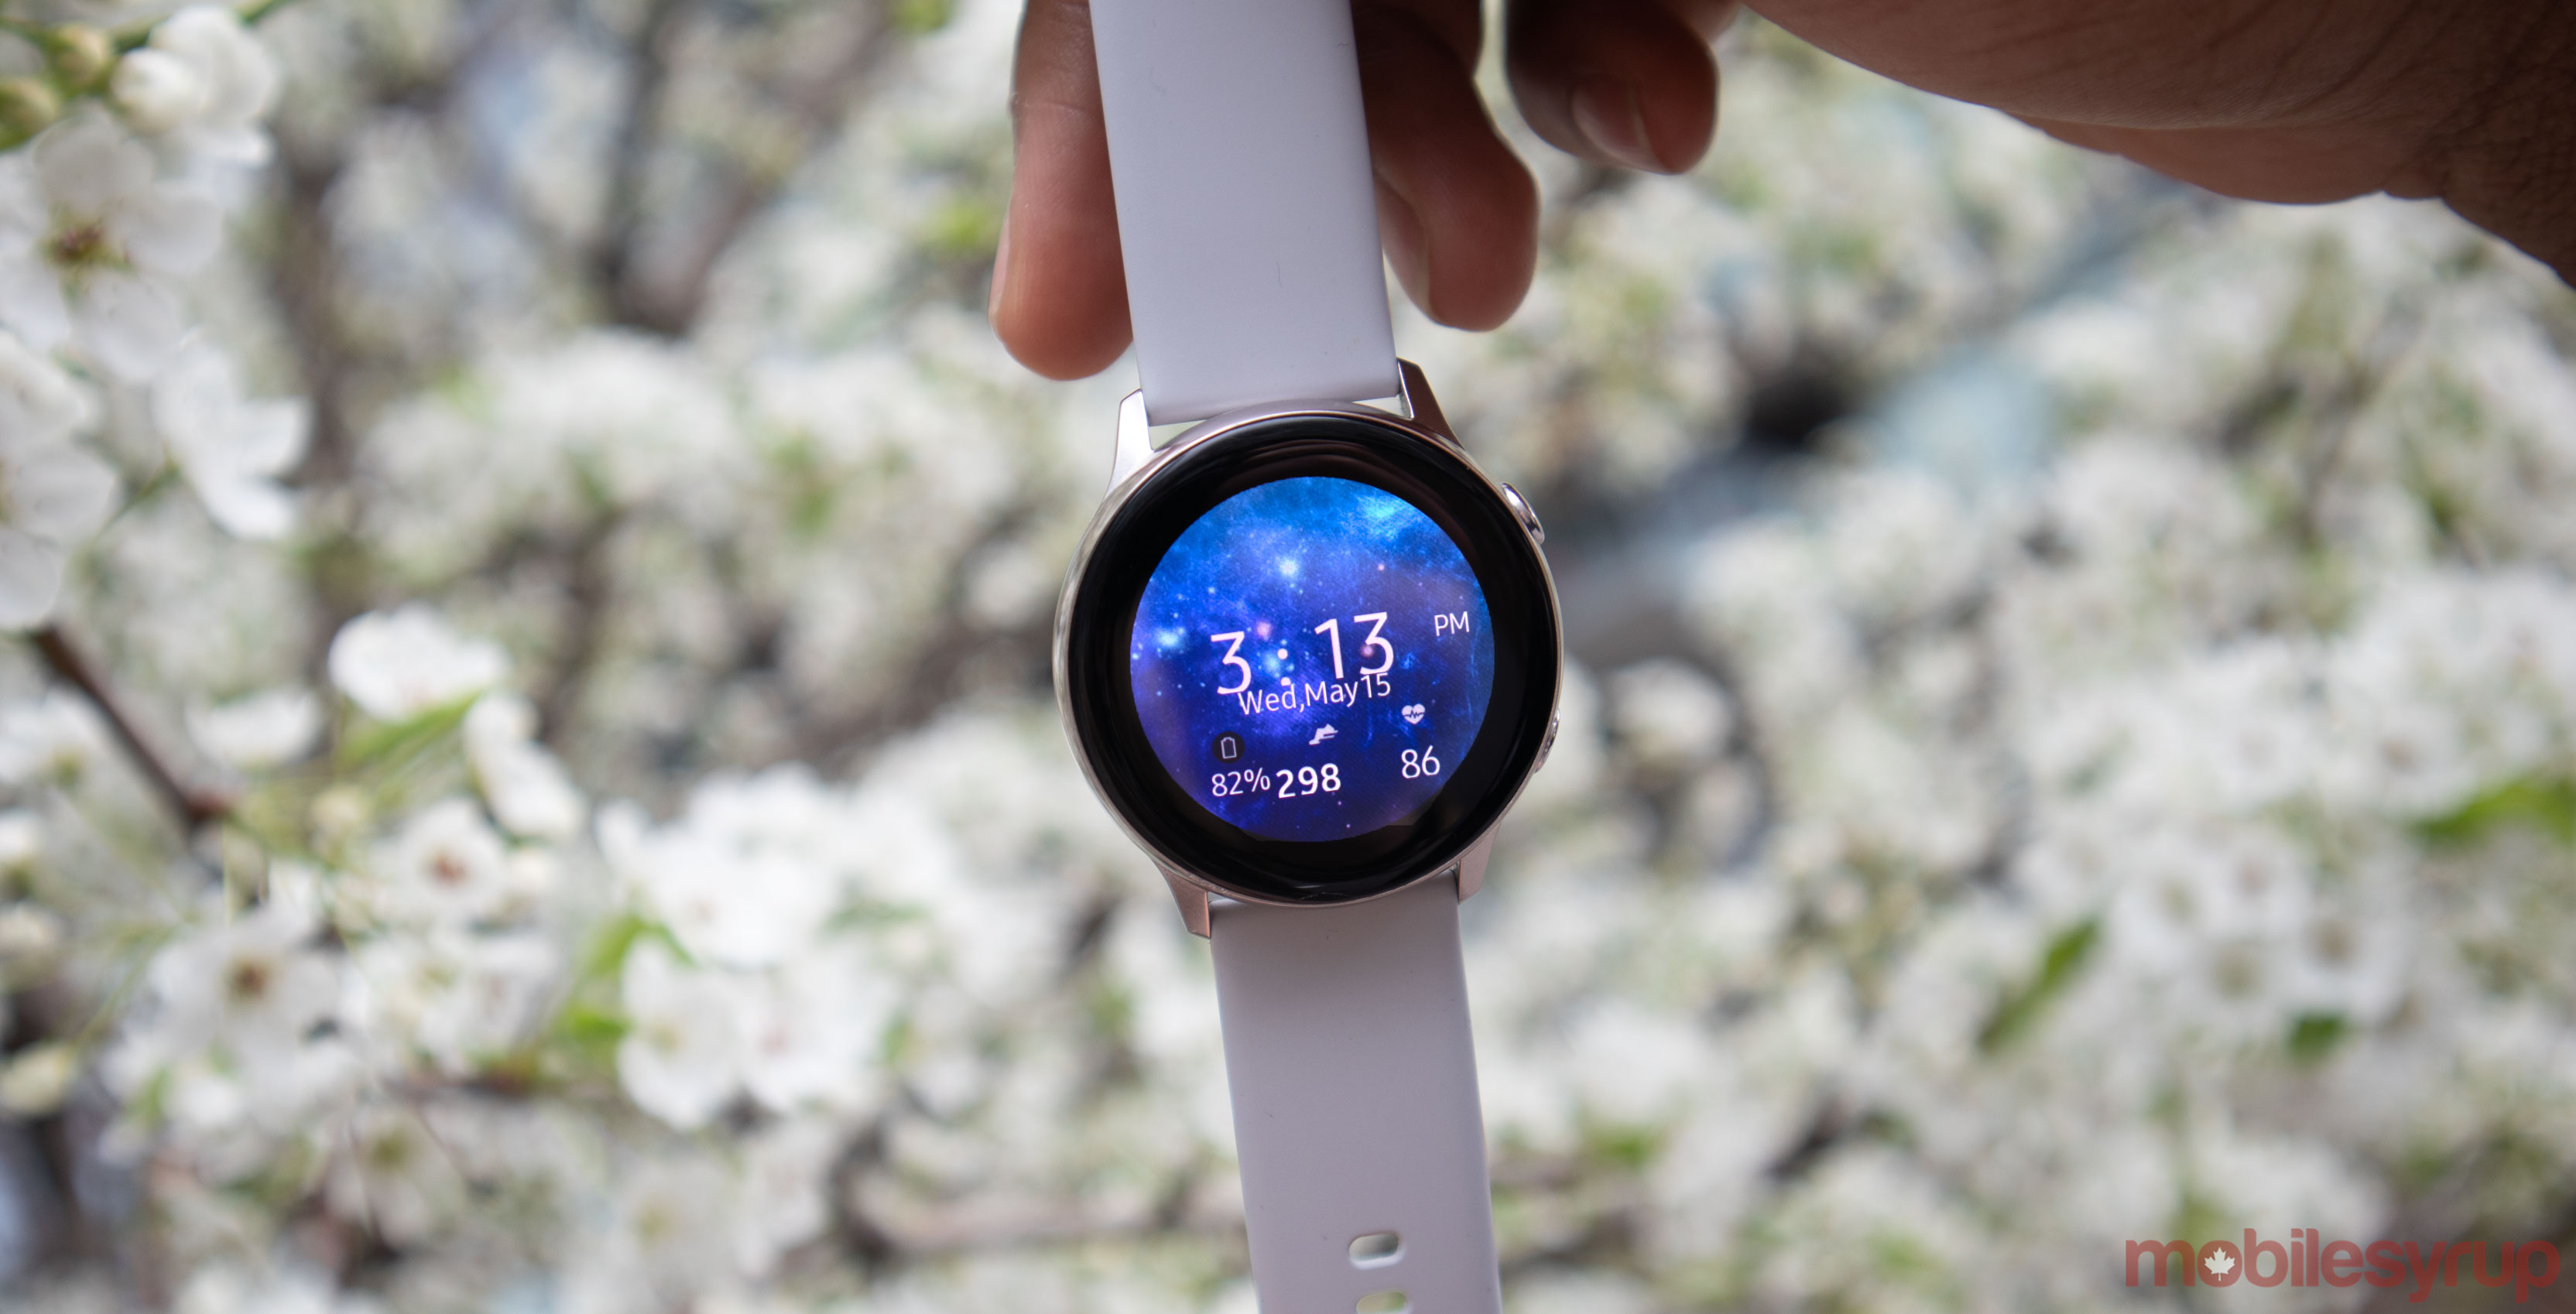 Samsung Galaxy Watch Active 2 to sport 